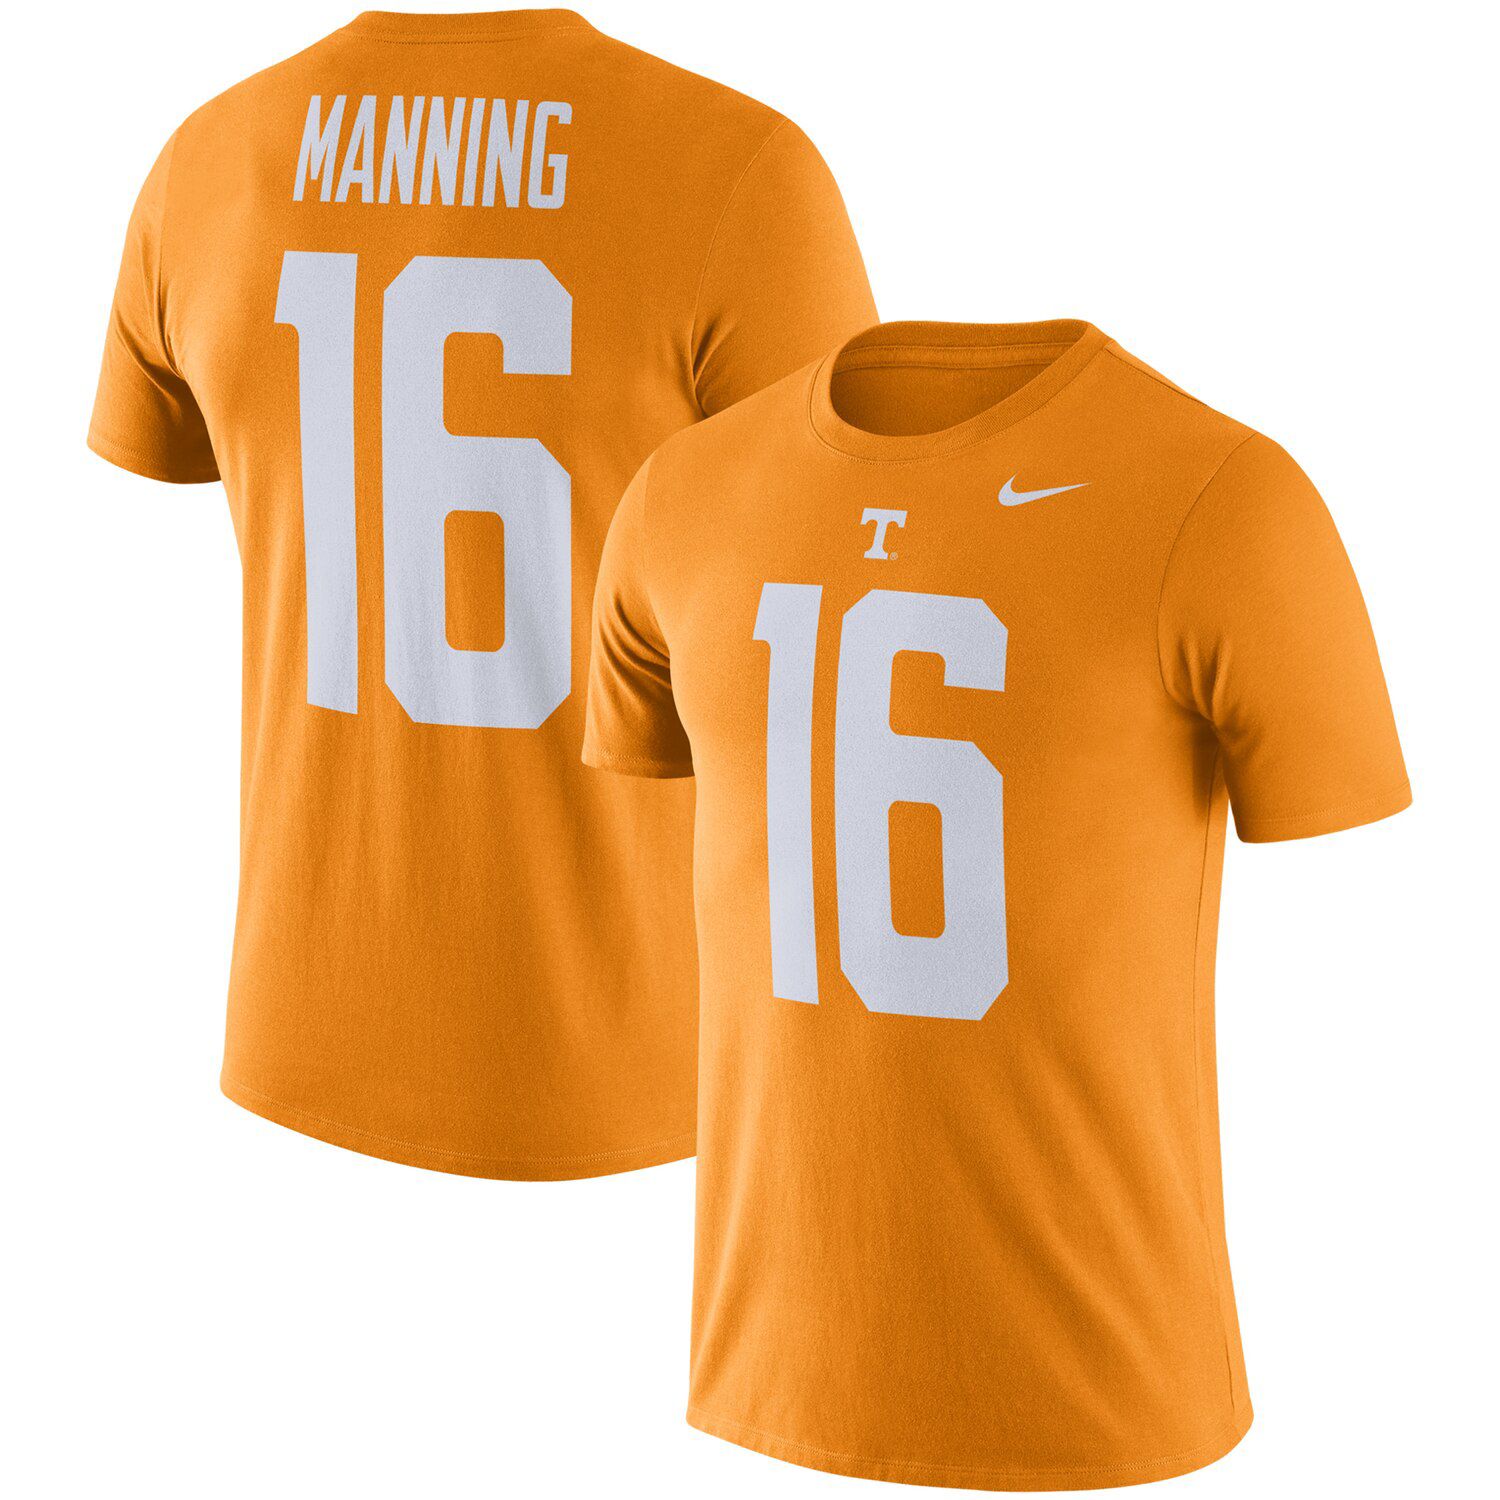 peyton manning's football jersey number